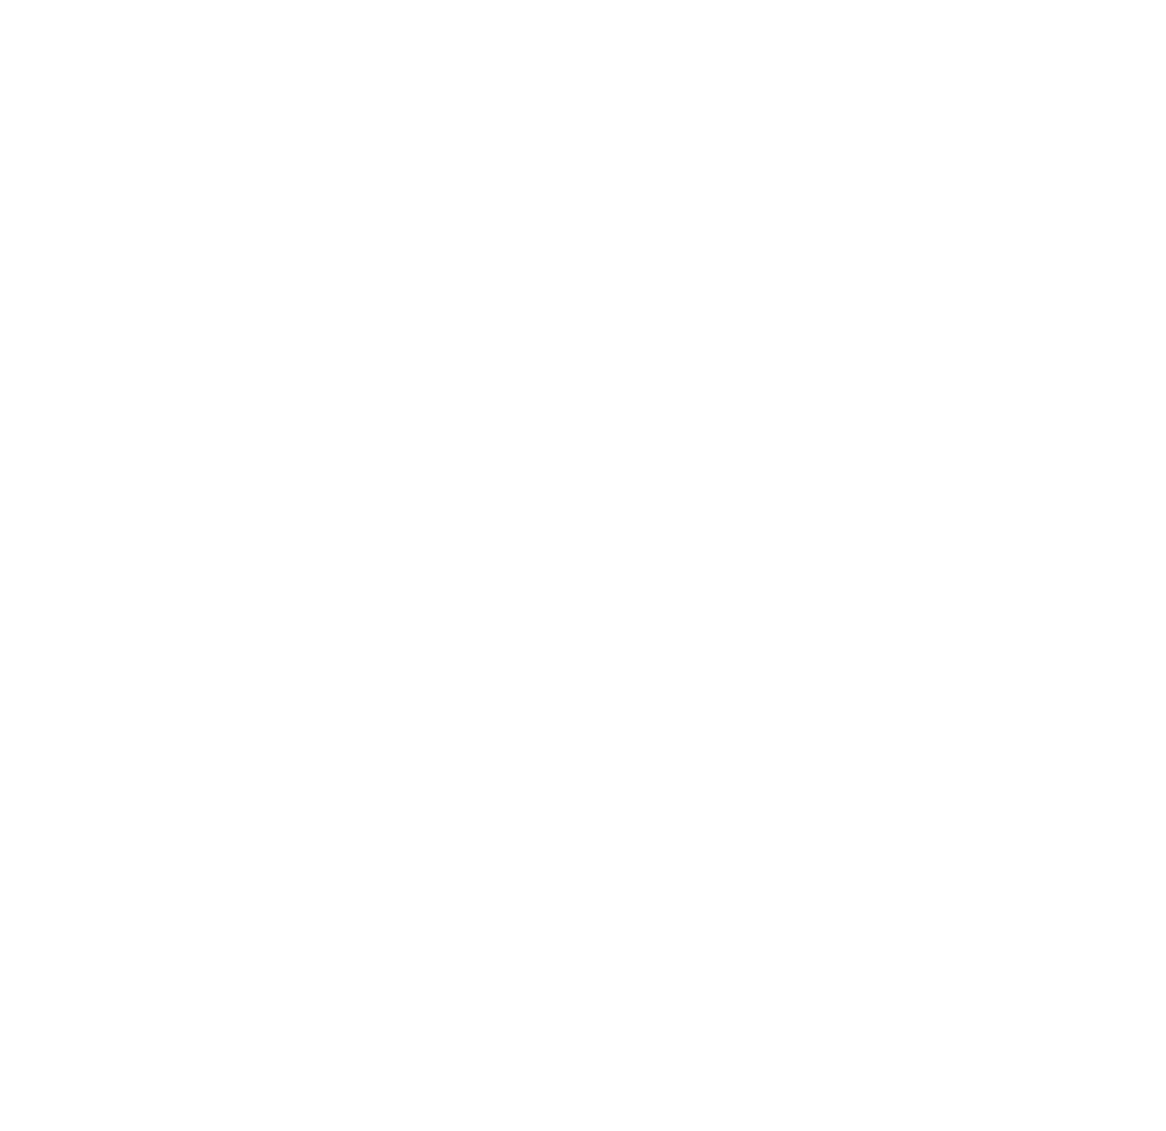 ARRIVISTE Coffee Roasters